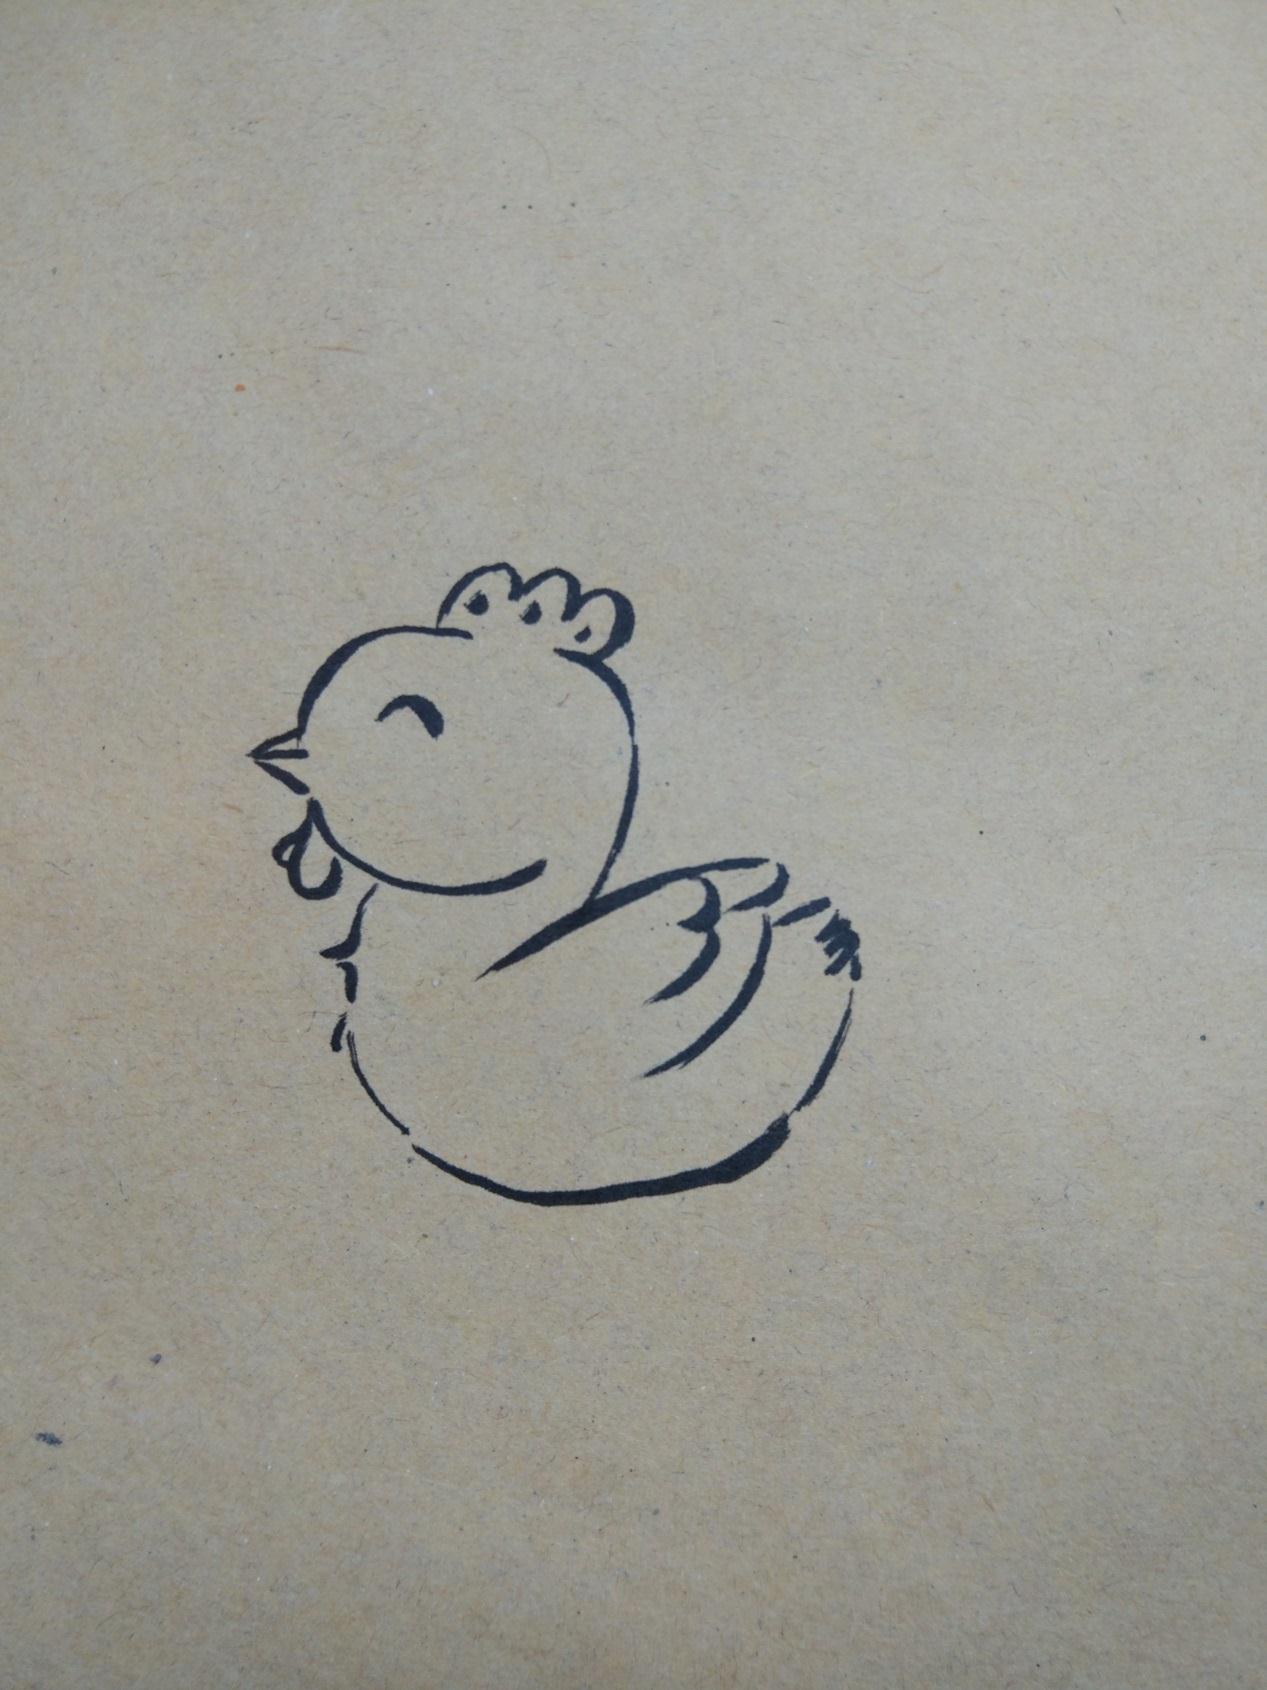 原创简单的彩绘画作品之可爱的卡通小鸡步骤图